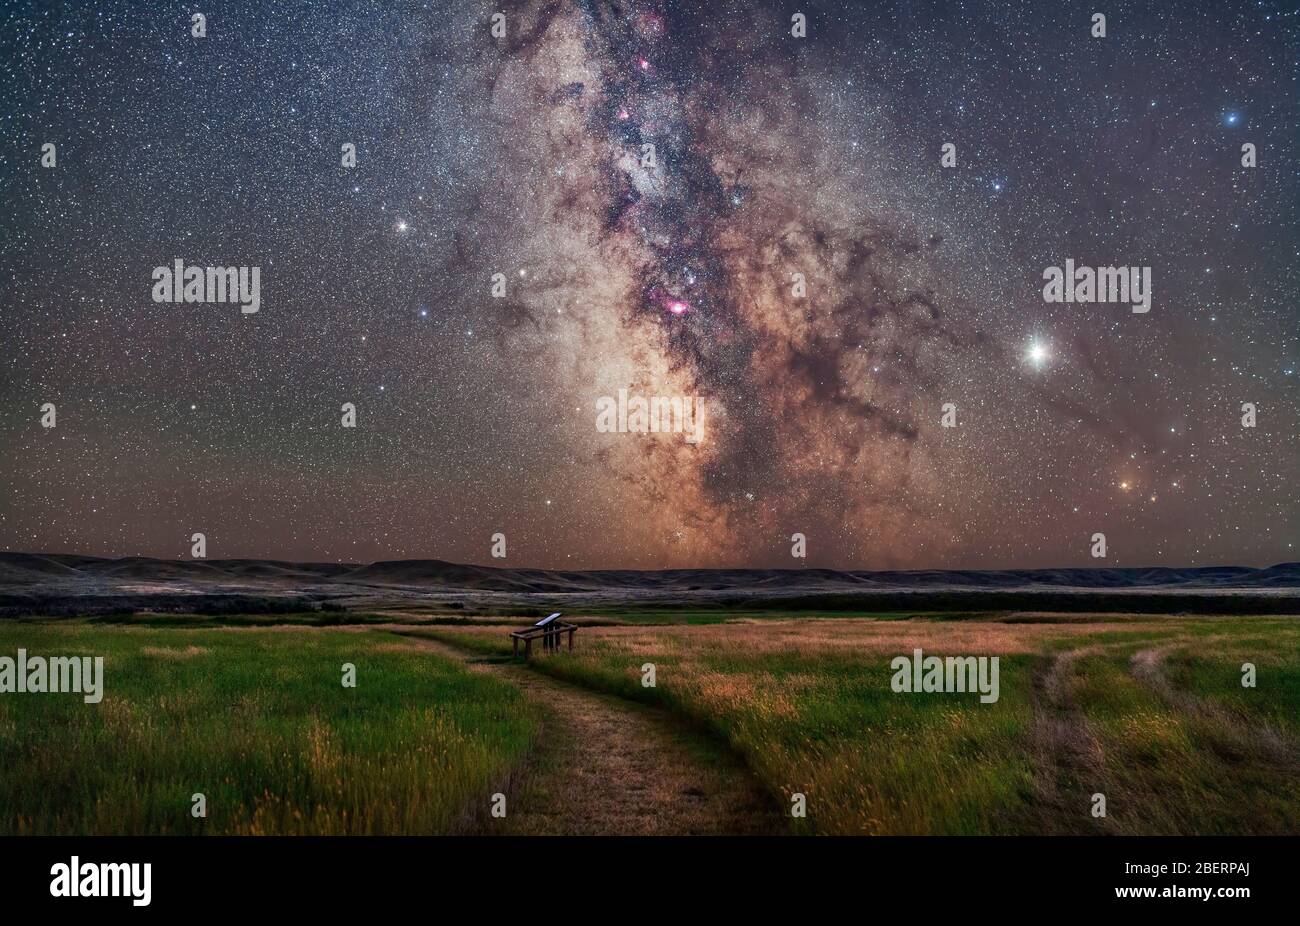 Le Centre galactique de la voie lactée au parc national des Prairies, Canada. Banque D'Images